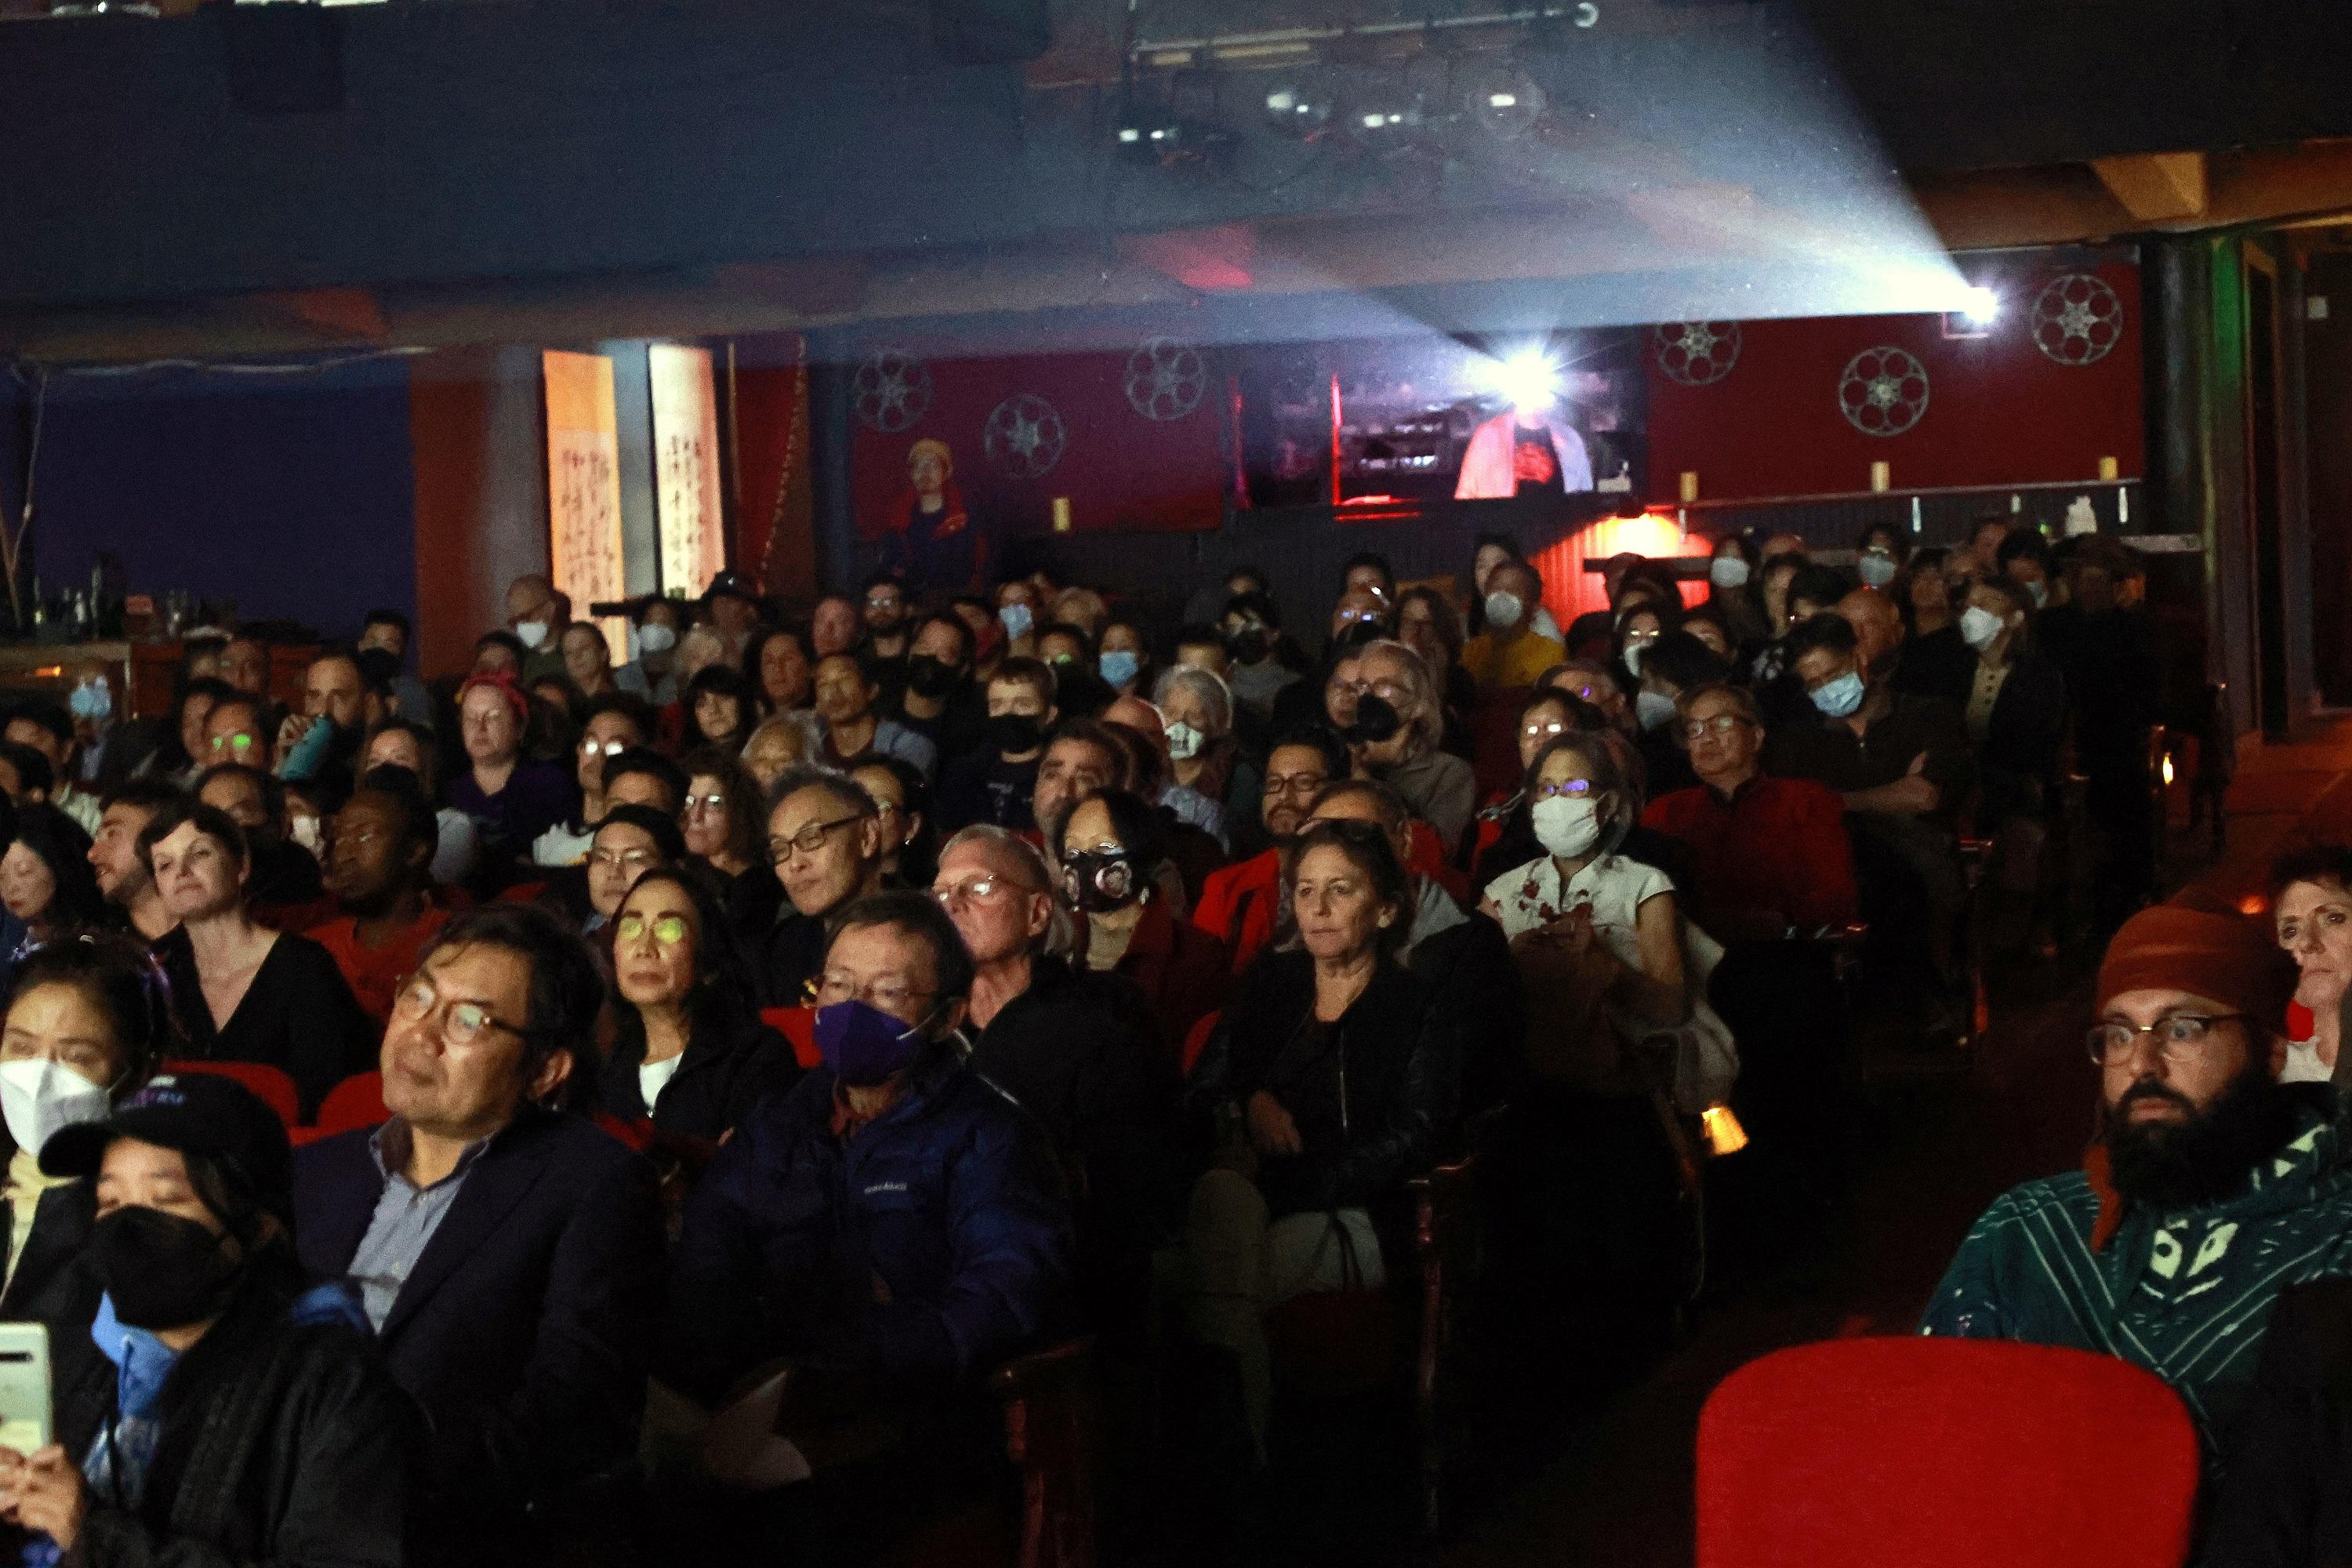 香港駐三藩市經濟貿易辦事處與美國華人歷史學會在三藩市合作舉辦「光芒四射李小龍：星光下的電影」電影系列。圖示十一月二十七日 （三藩市時間）舉行的《猛龍過江》放映活動廣受歡迎，座無虛席。